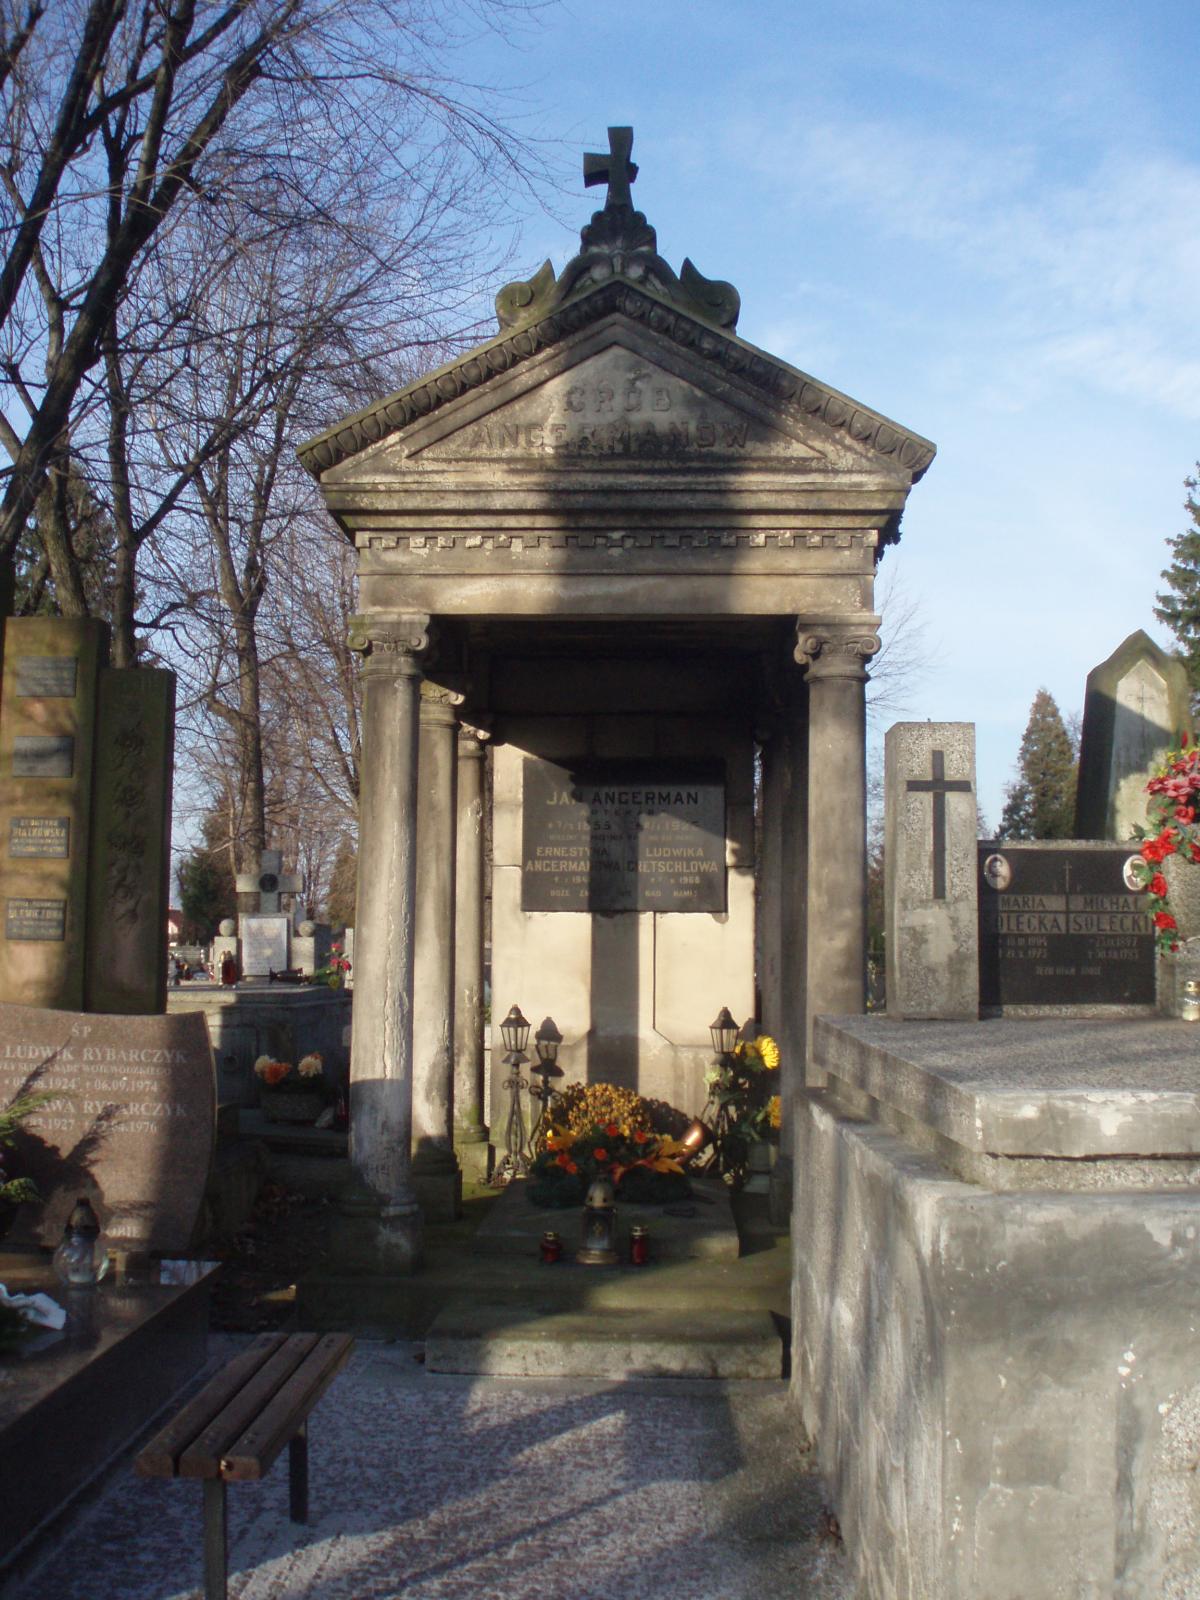 Wikipedia, Pobitno Cemetery in Rzeszw, Self-published work